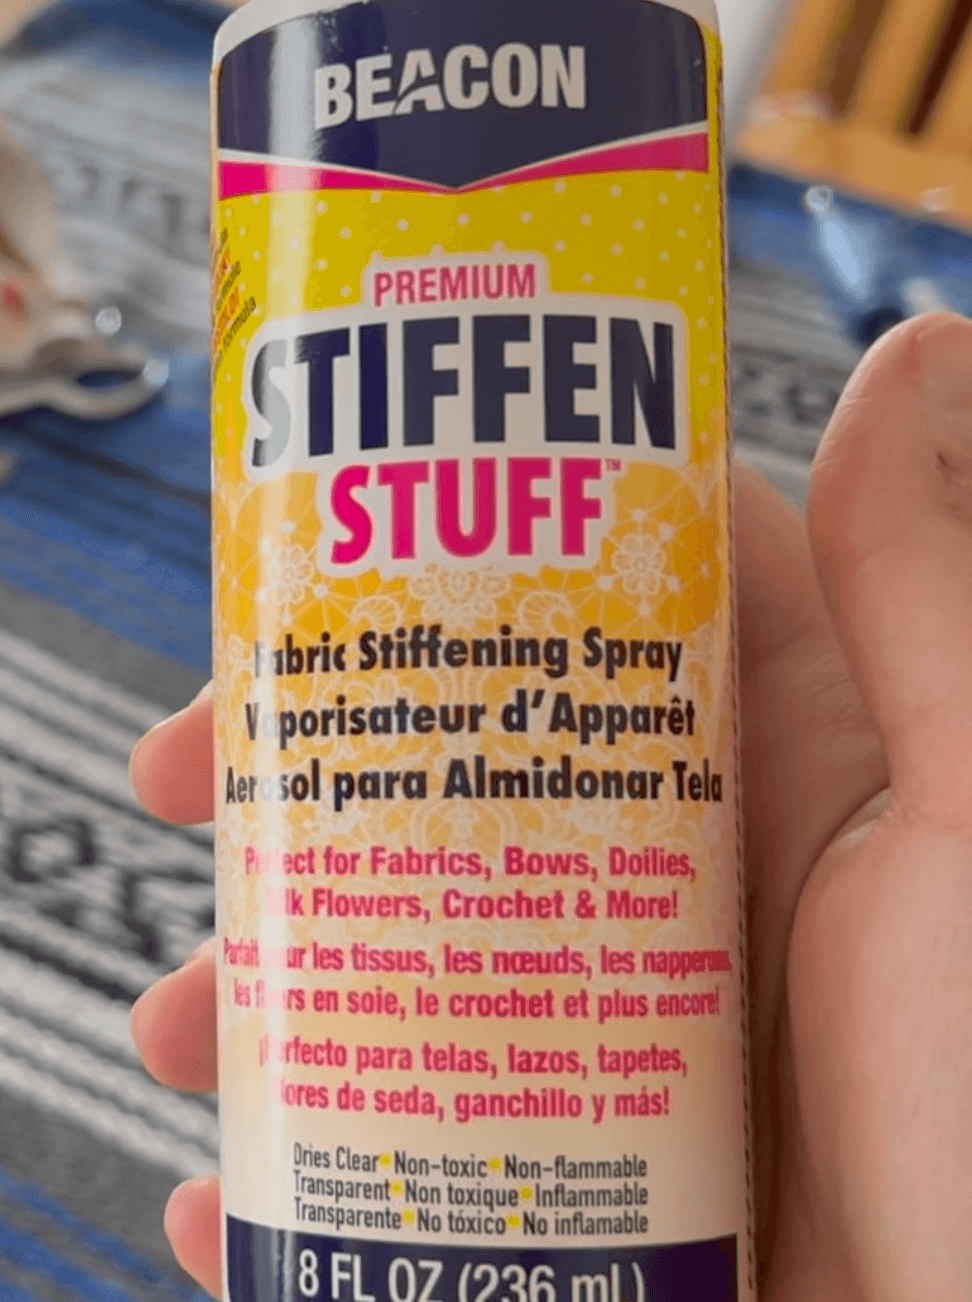 A spray bottle of Stiffen Stuff